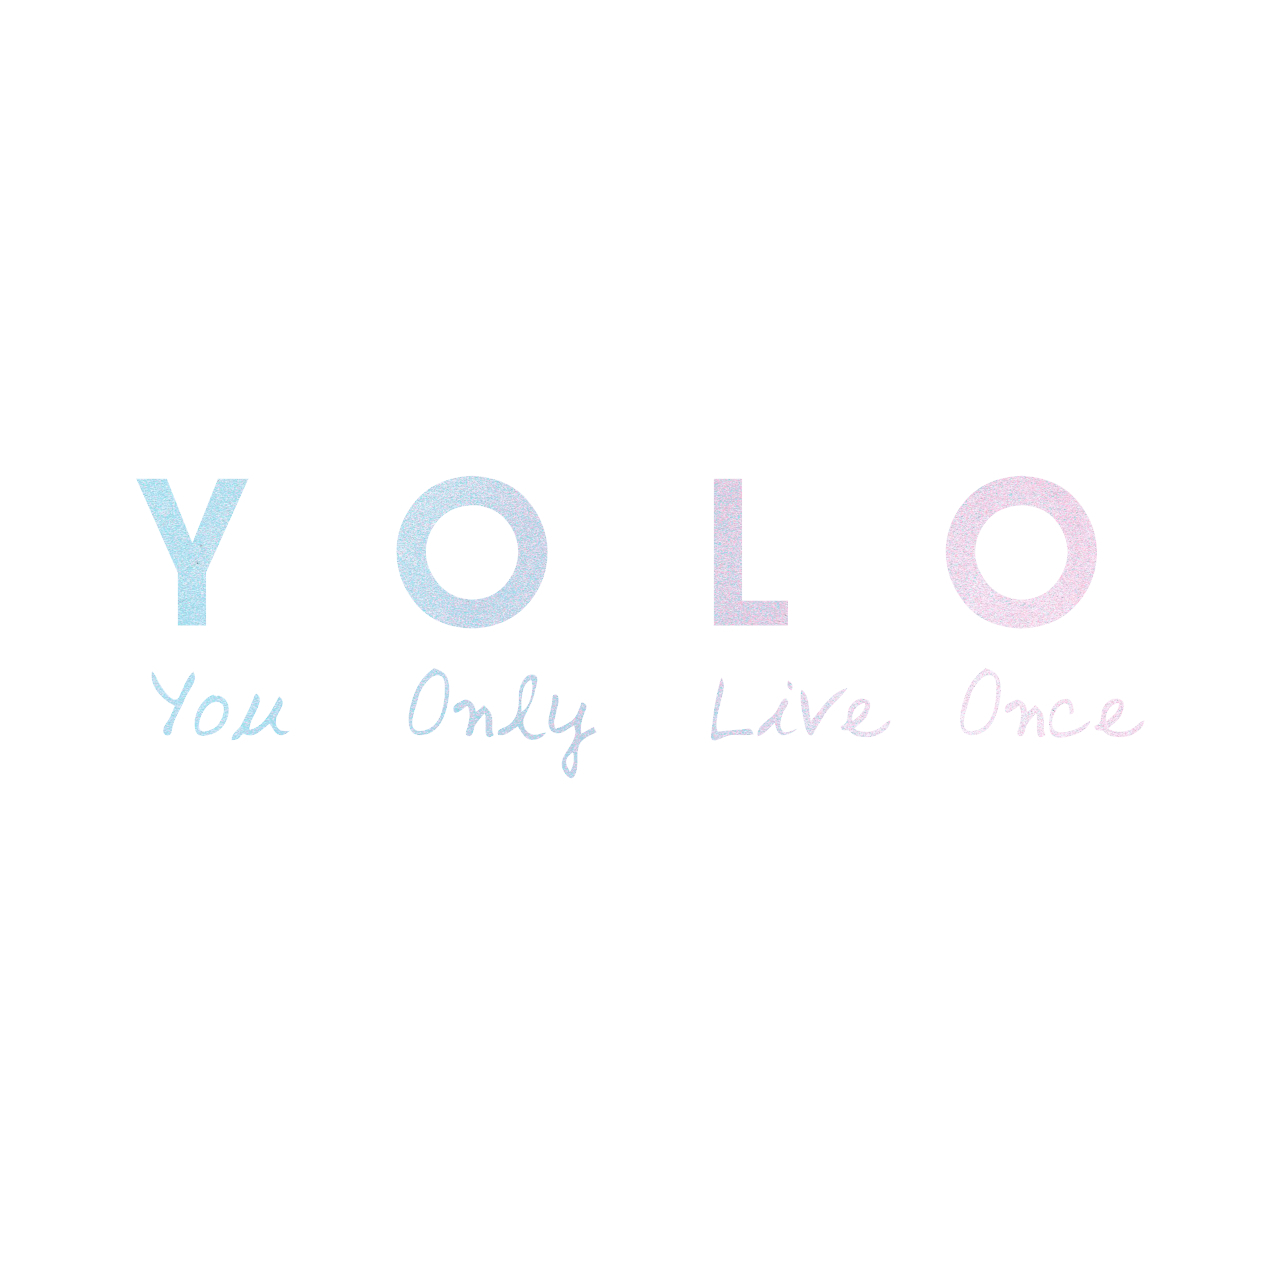 ウォールステッカー 名言 Yolo You Only Live Once 空ピンク 光沢 スプレーアート Iby アイバイ ウォールステッカー 通販